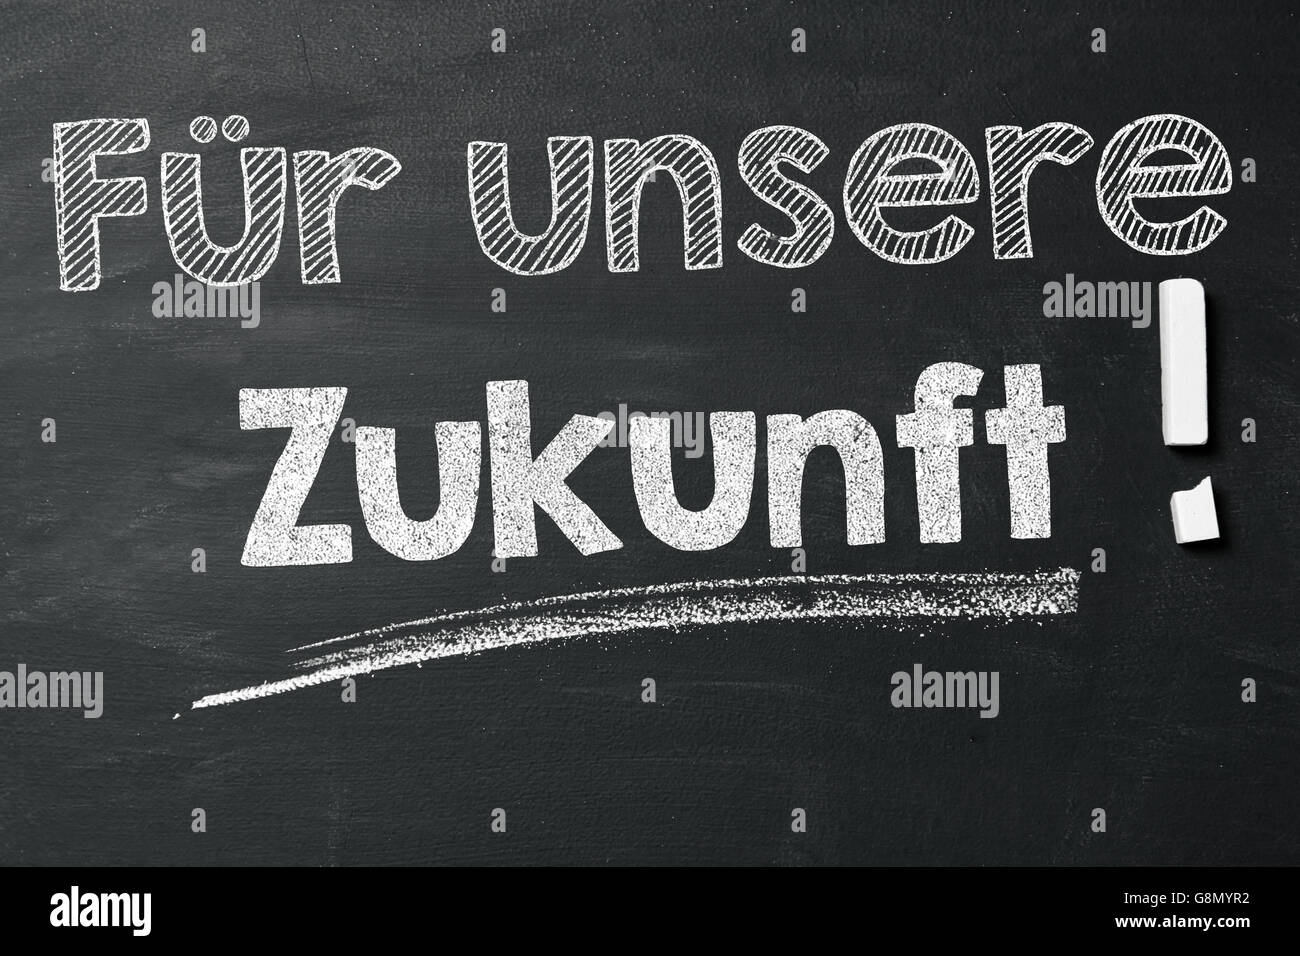 Espressione tedesca "Für unsere Zukunft!" (per il nostro futuro!) con un gessetto sulla lavagna Foto Stock